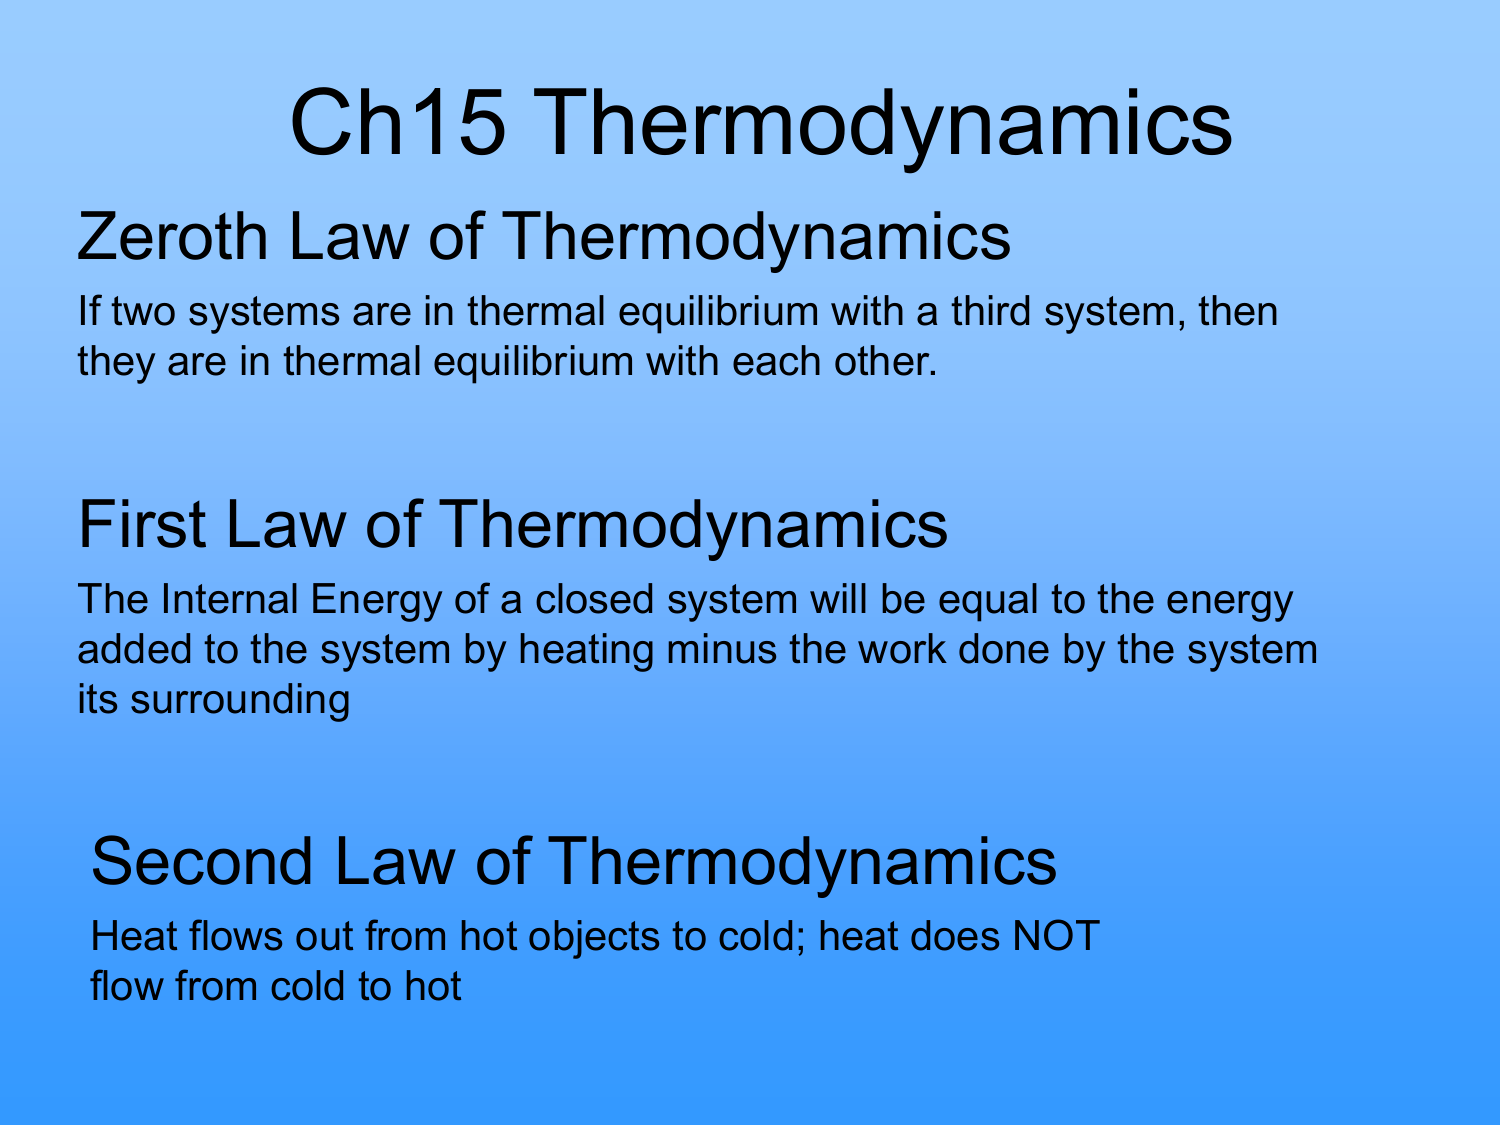 interactive thermodynamics 3.2 show more decimal command